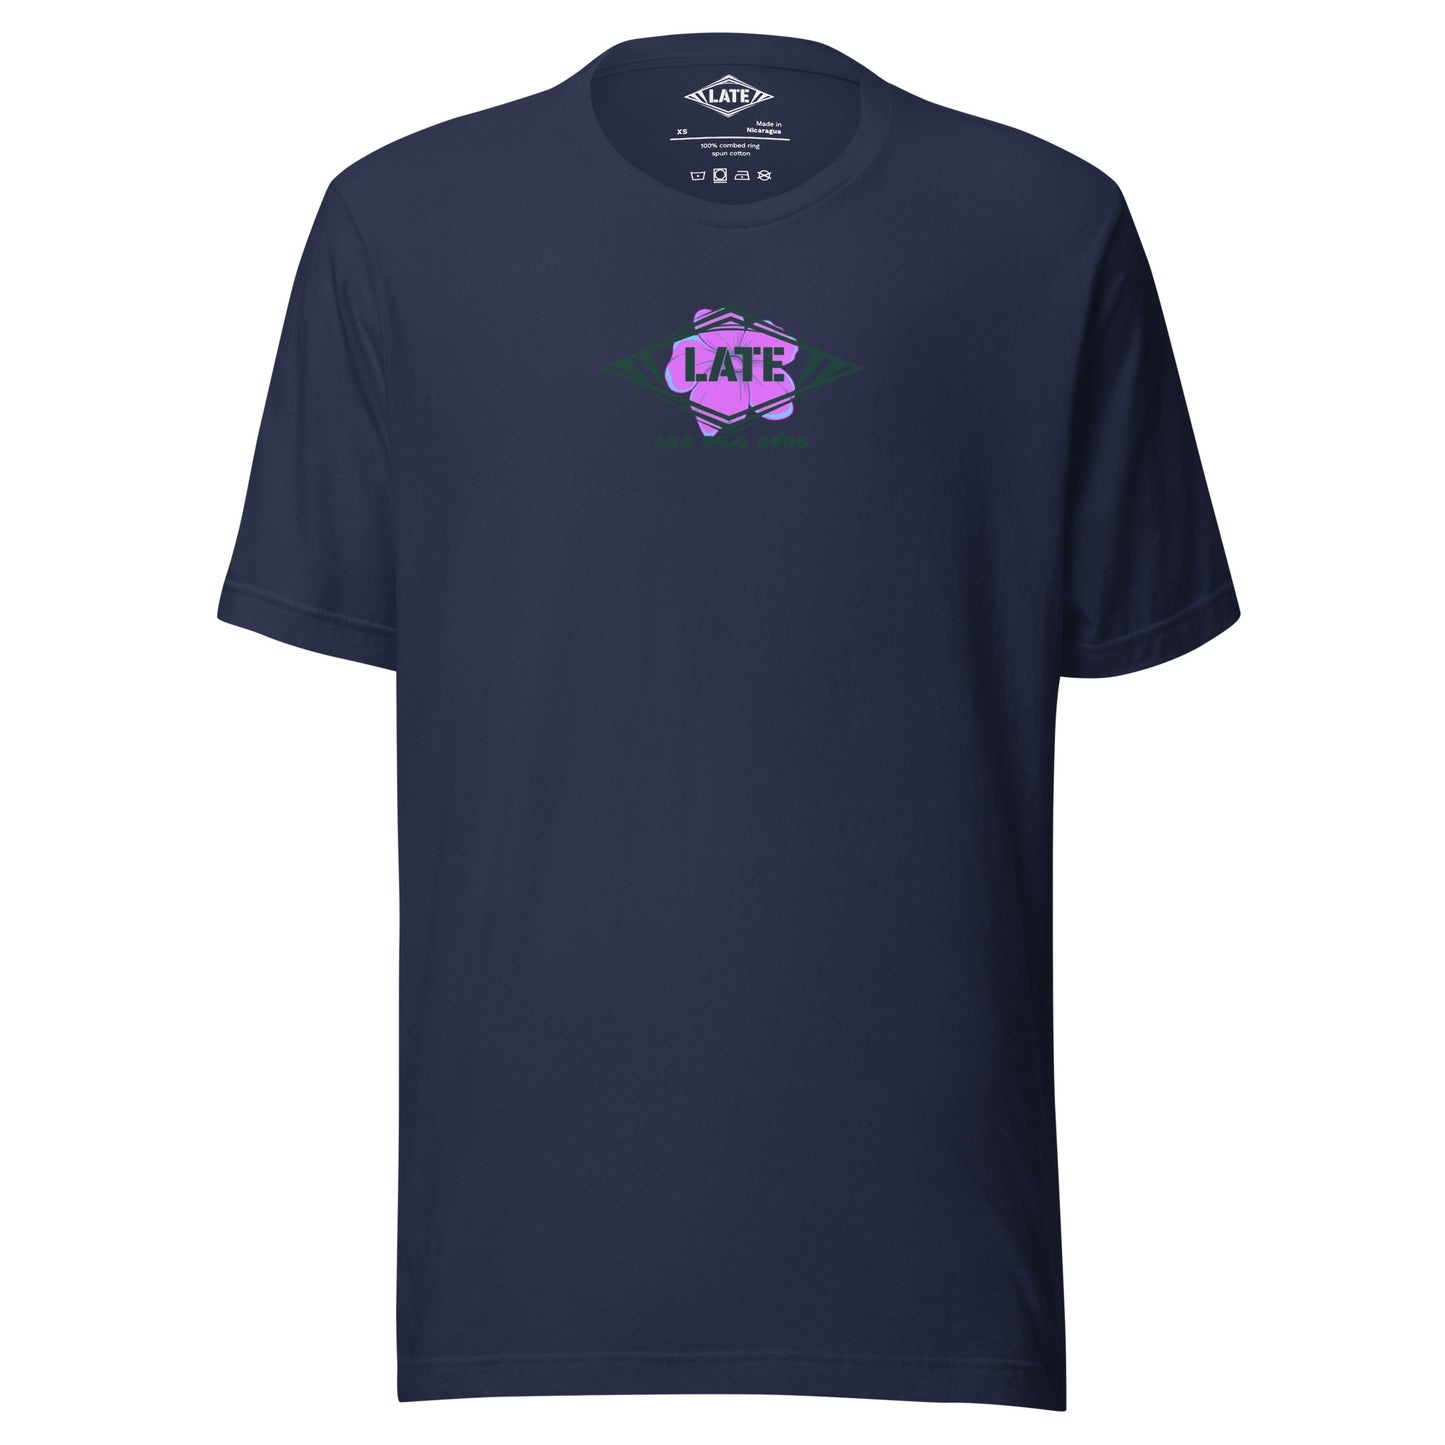 T-Shirt skate dark psychédélique de face avec motif floral texte not for kids t-shirt unisex de couleur navy